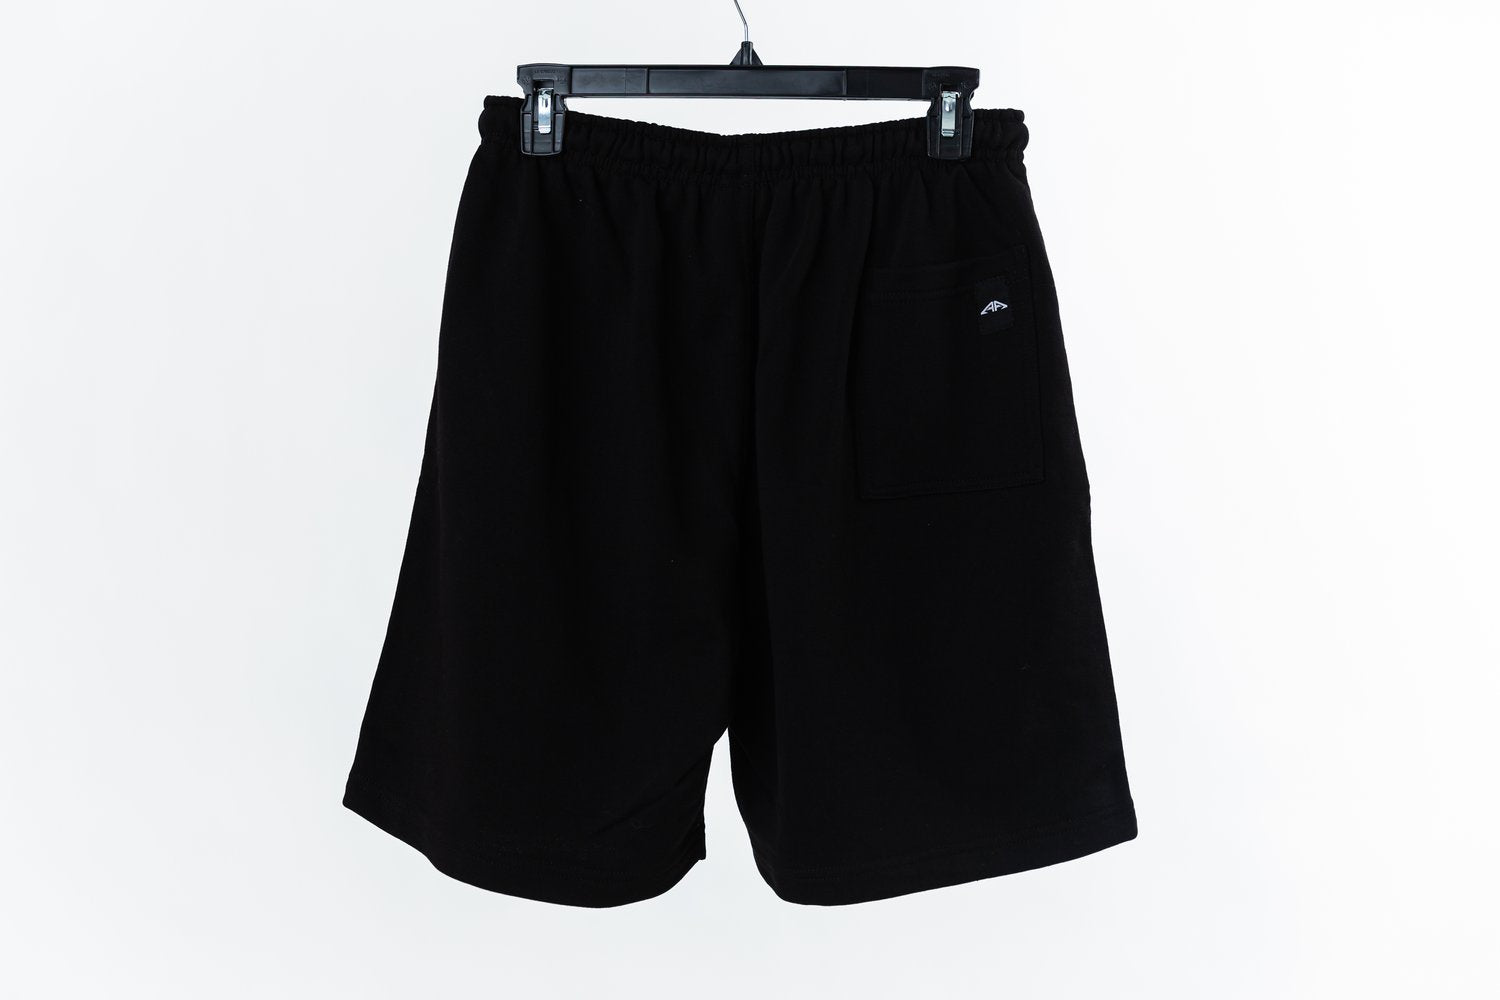 Men's Cozy Cotten Shorts